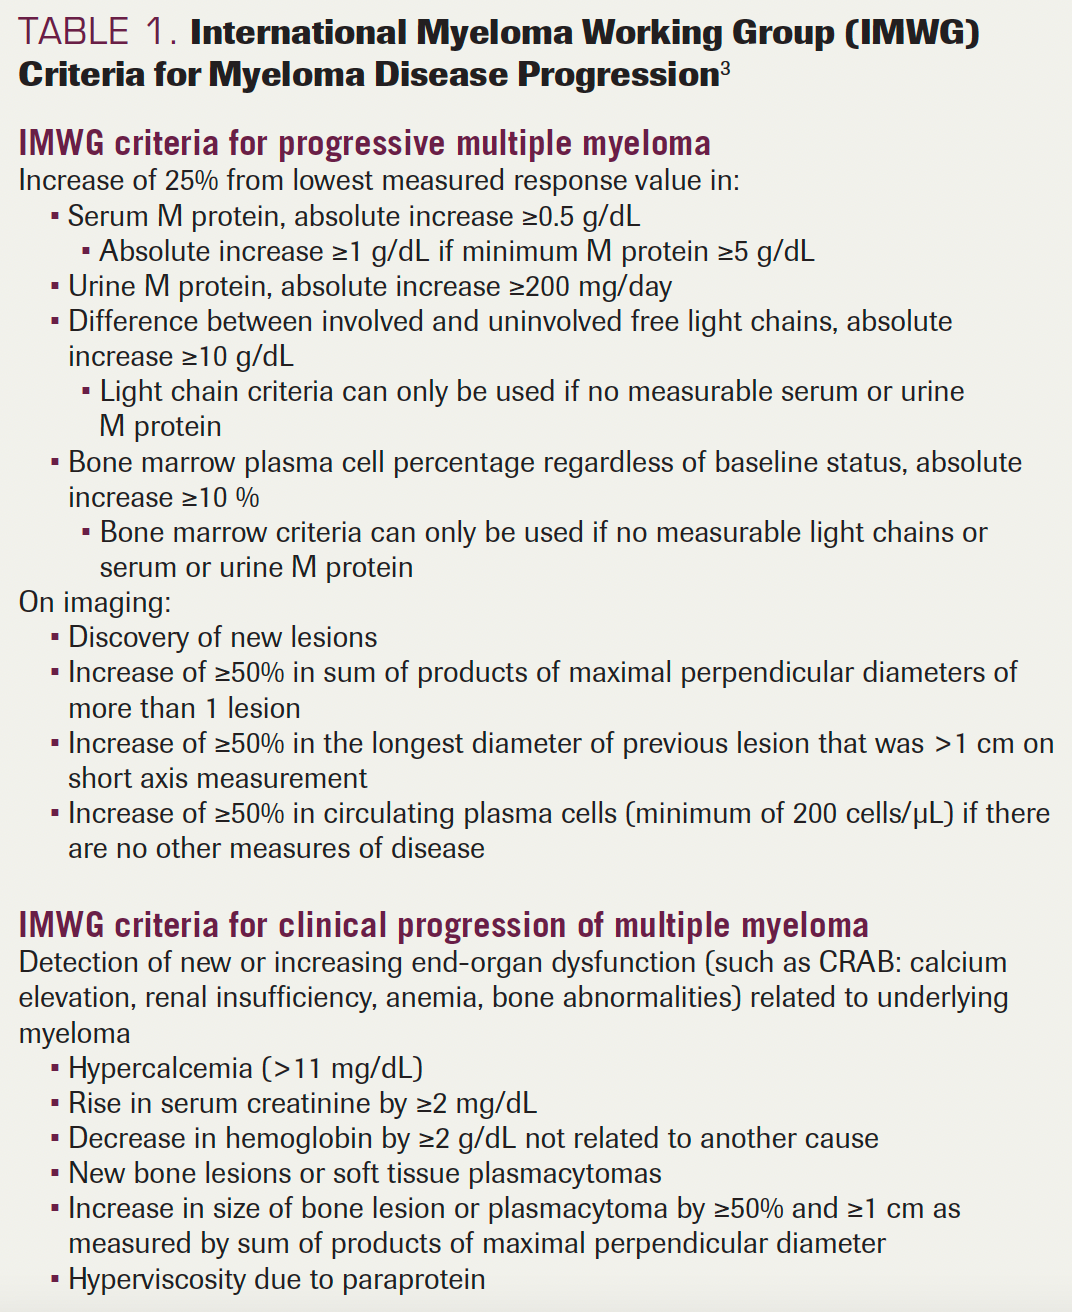 TABLE 1. International Myeloma Working Group (IMWG) Criteria for Myeloma Disease Progression3